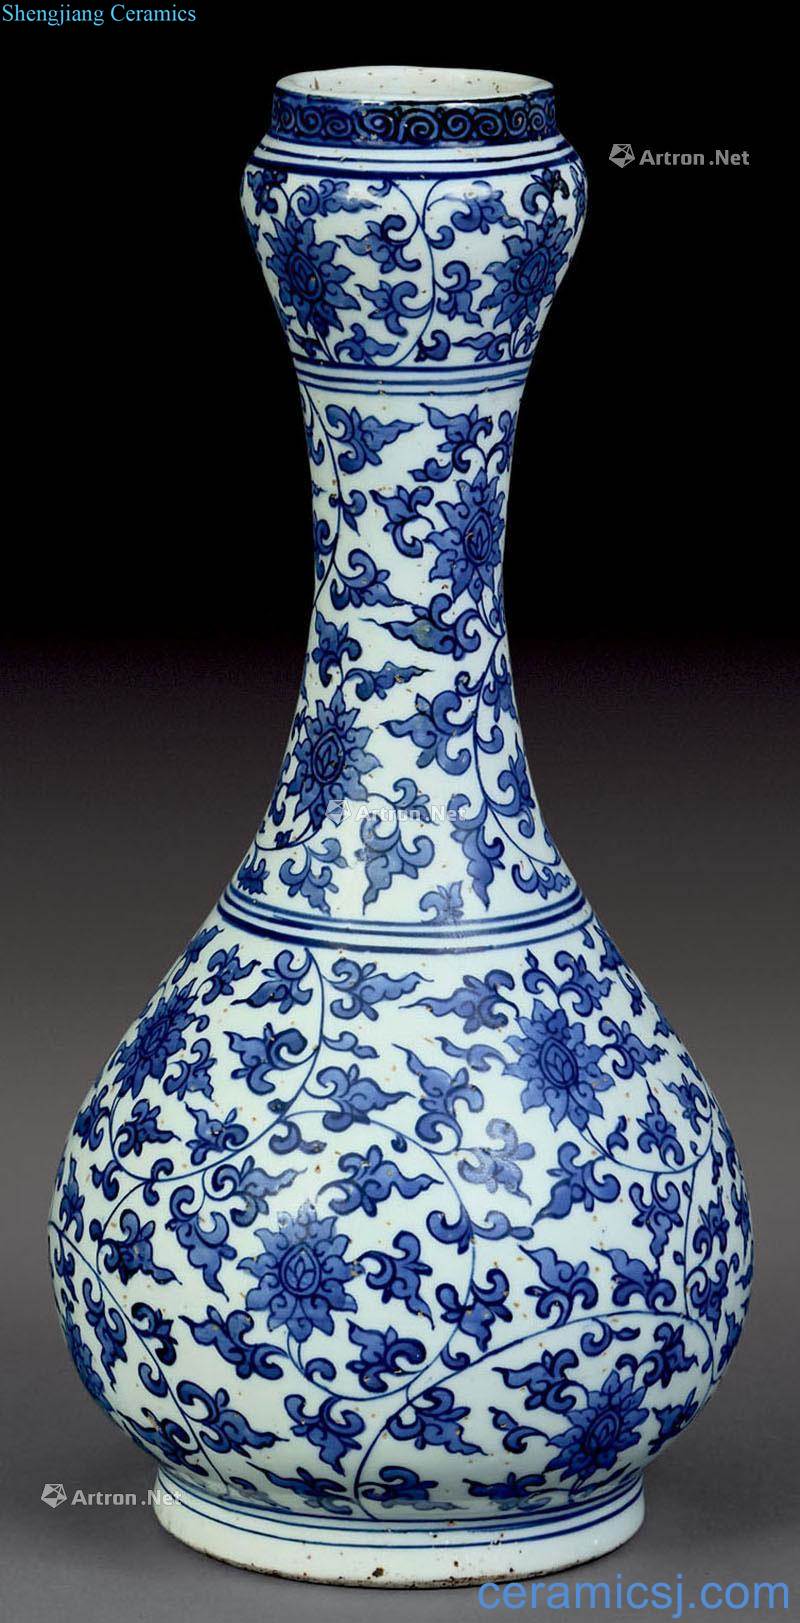 Ming Blue and white flower bottles garlic around branches